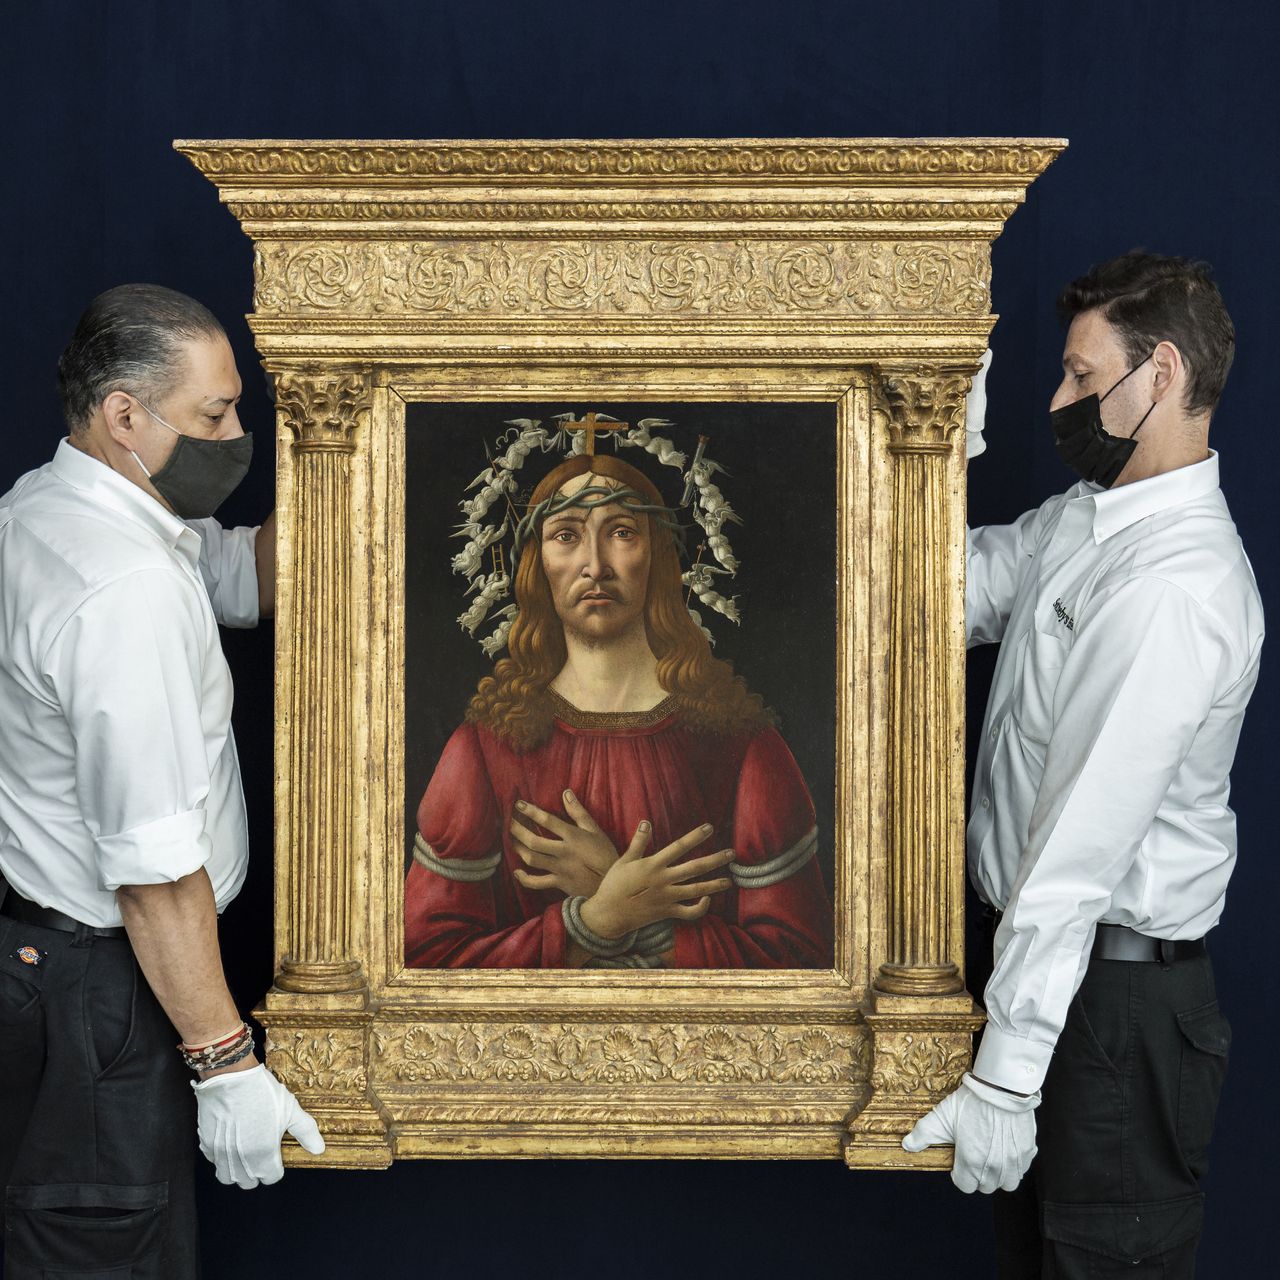 Έναντι 45 εκατομμυρίων δολαρίων πουλήθηκε σε δημοπρασία στη Νέα Υόρκη ένας σπάνιος πίνακας του Σάντρο Μποτιτσέλι